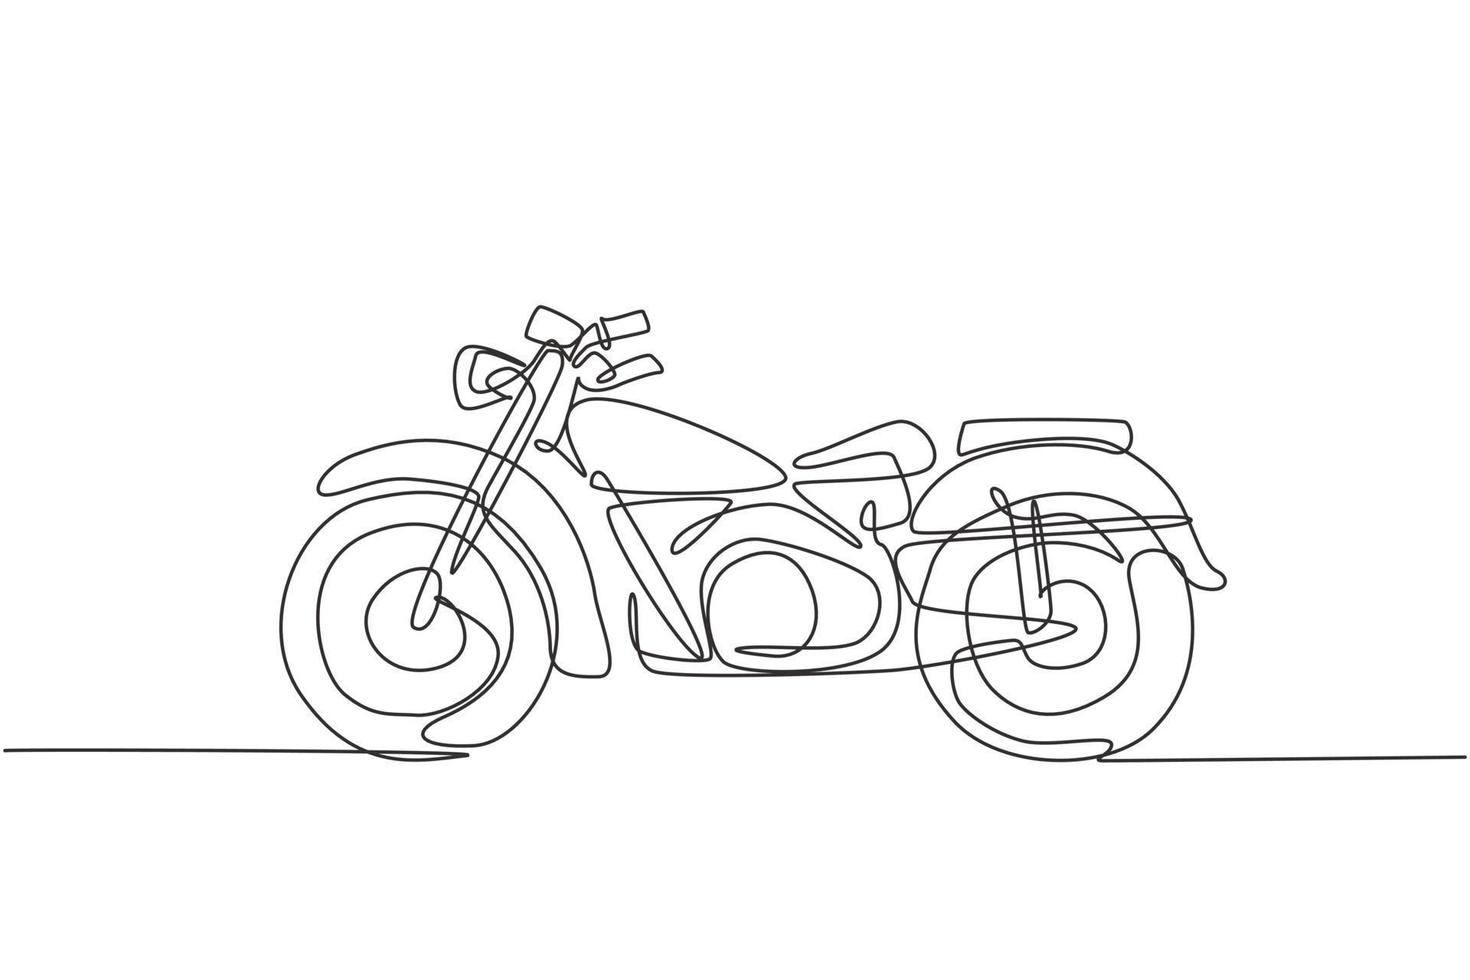 singolo disegno a linea continua del vecchio simbolo classico della moto d'epoca. concetto di trasporto di moto retrò una linea grafica disegnare disegno vettoriale illustrazione